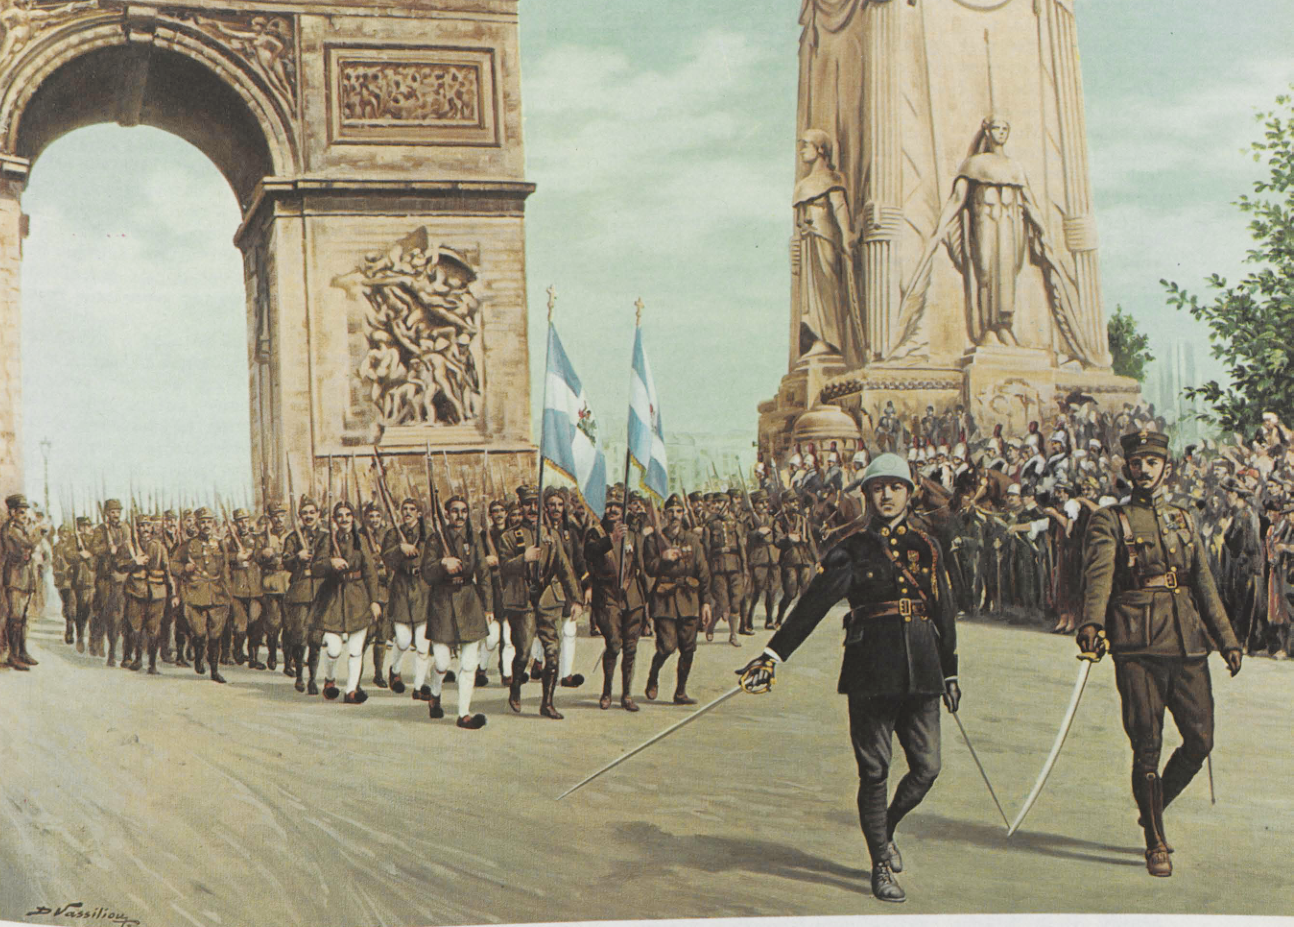 Ενώ στο Παρίσι συνεδρίαζε το Συνέδριο Ειρήνης, οι Γάλλοι, με την ευκαιρία της εθνικής τους εορτής στις 14 Ιουλίου 1919, τίμησαν με μεγάλη λαμπρότητα τη νίκη τους στον Α’ Παγκόσμιο Πόλεμο. Στη φωτογραφία, ελληνικό στρατιωτικό τμήμα, με την πολεμική του σημαία, παρελαύνει κάτω από την Αψίδα του Θριάμβου. Αθήνα, Εθνικό ιστορικό Μουσείο. Πηγή: Ιστορία του Ελληνικού Έθνους. Εκδοτική Αθηνών. Τόμος ΙΕ’. Αθήνα, 1978.